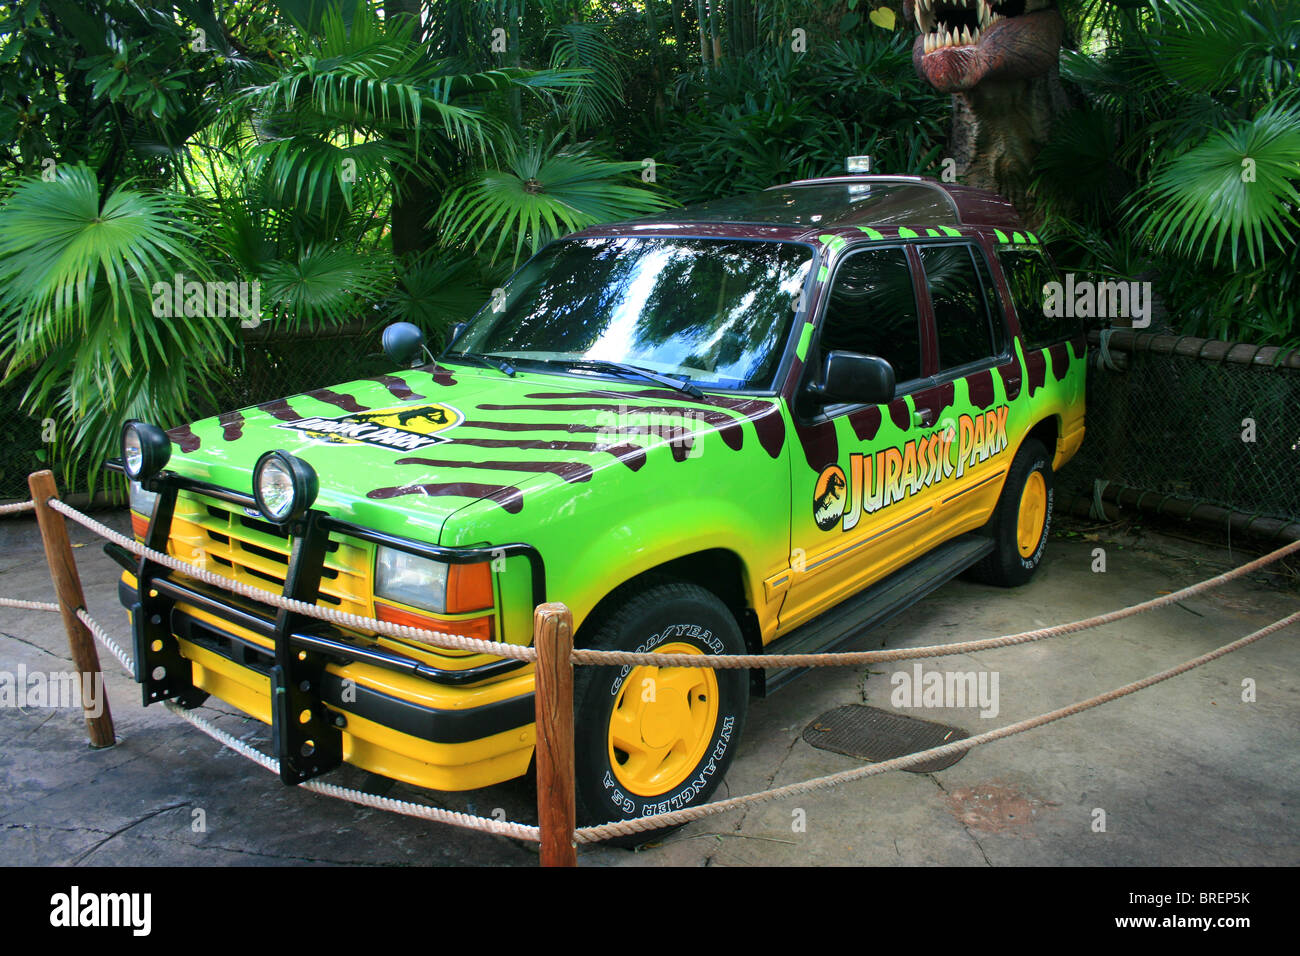 Total 31+ imagen green jurassic park jeep wrangler